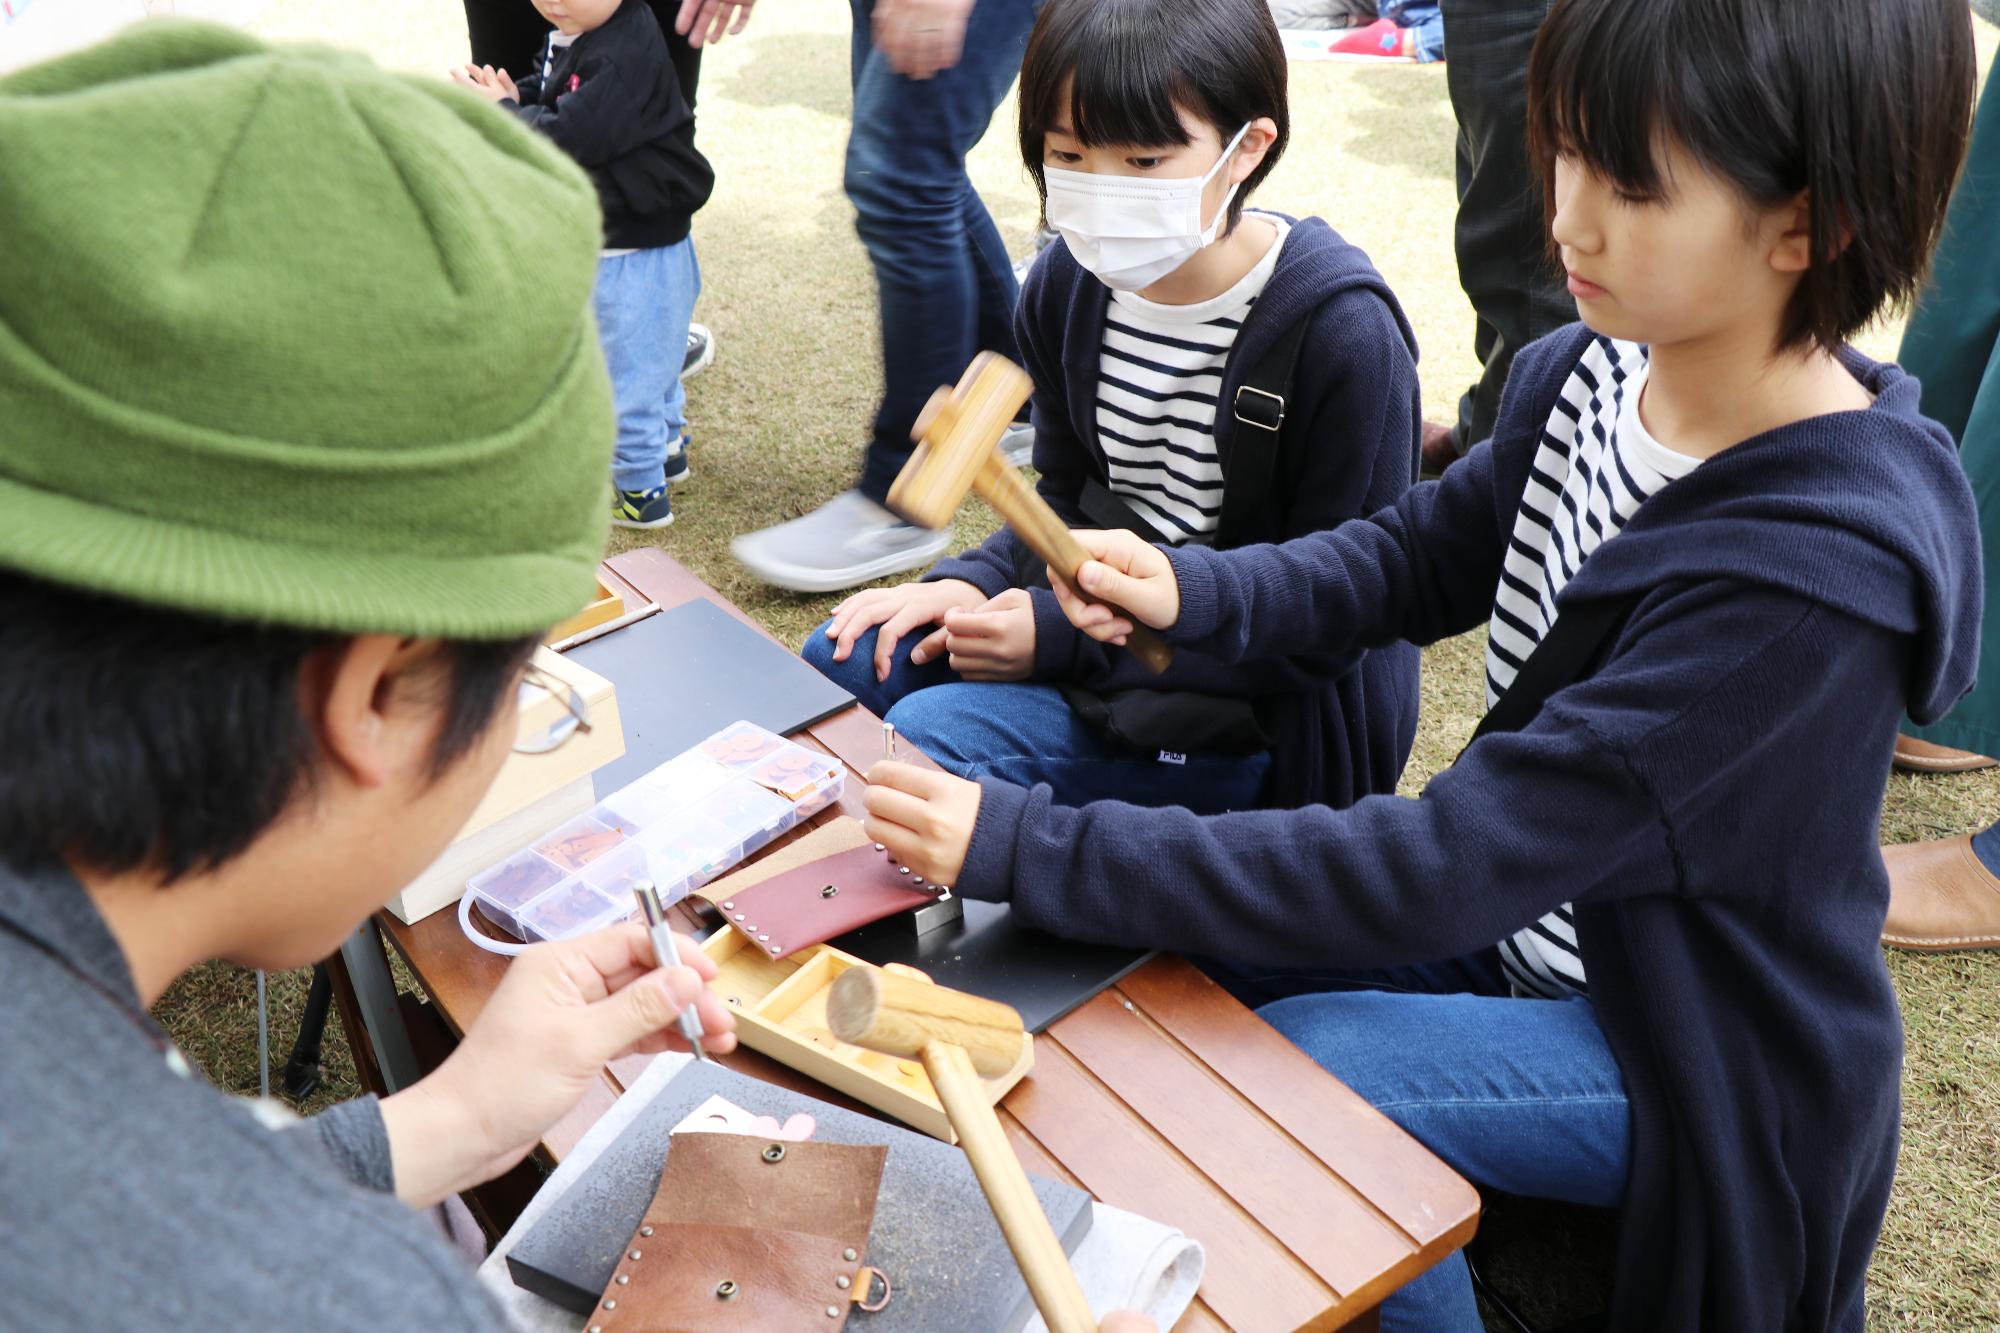 おそろいの紺色のパーカーとボーダーのTシャツを着た二人の子どもが木槌を使い革製品を作っている写真